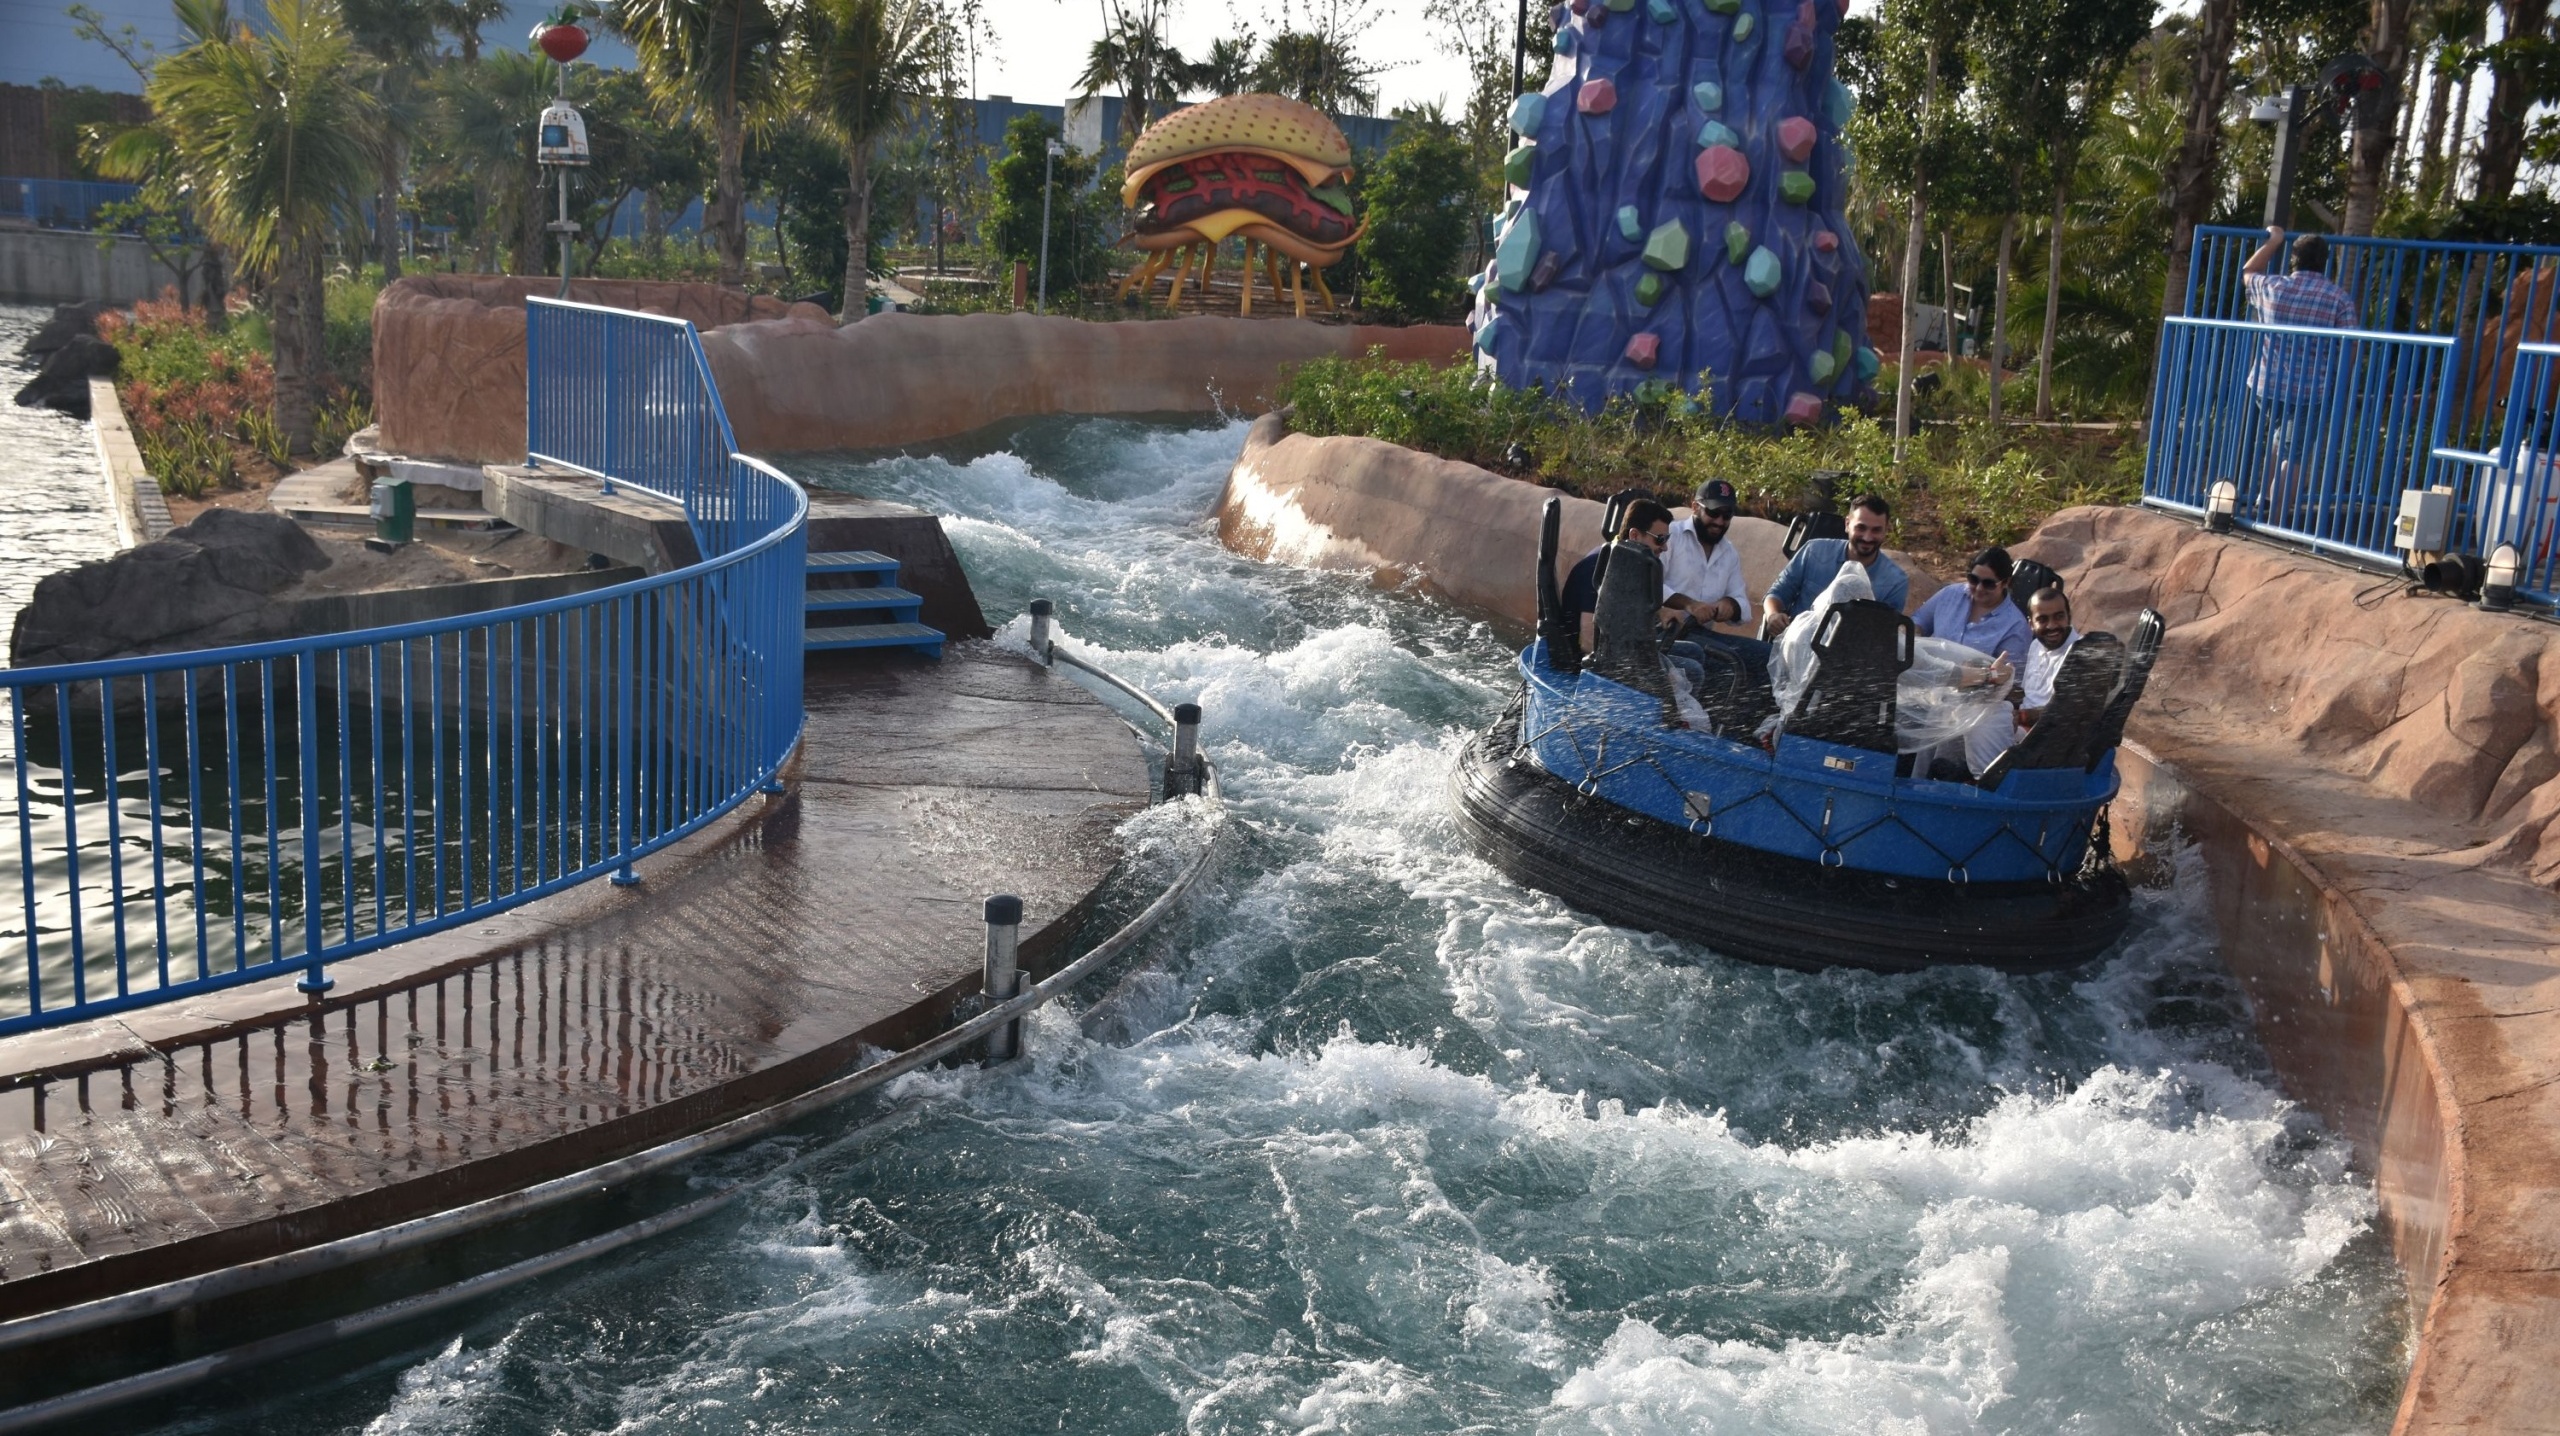 River Raft Ride, motiongate™ Dubai, UAE